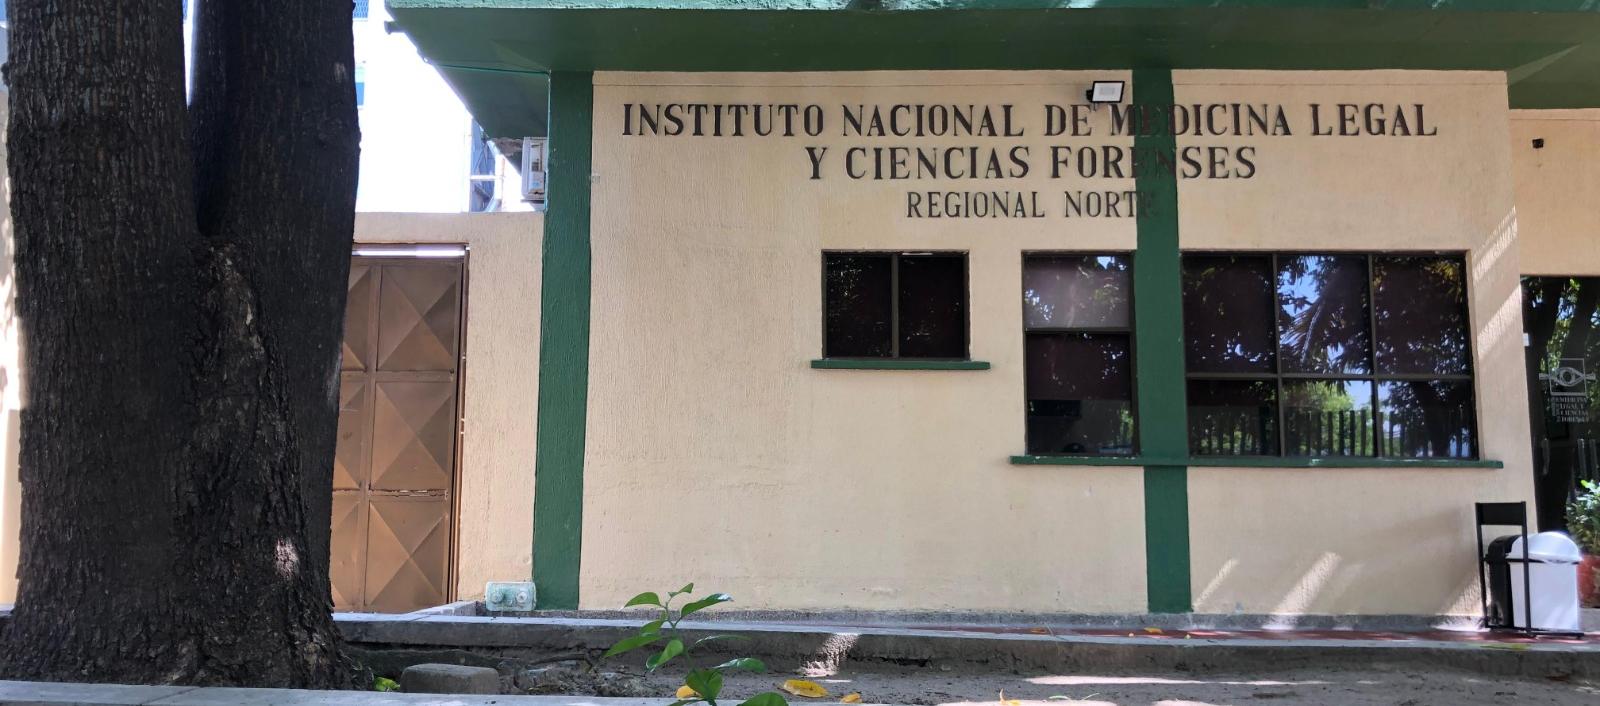 Instalaciones de Medicina Legal de Barranquilla.